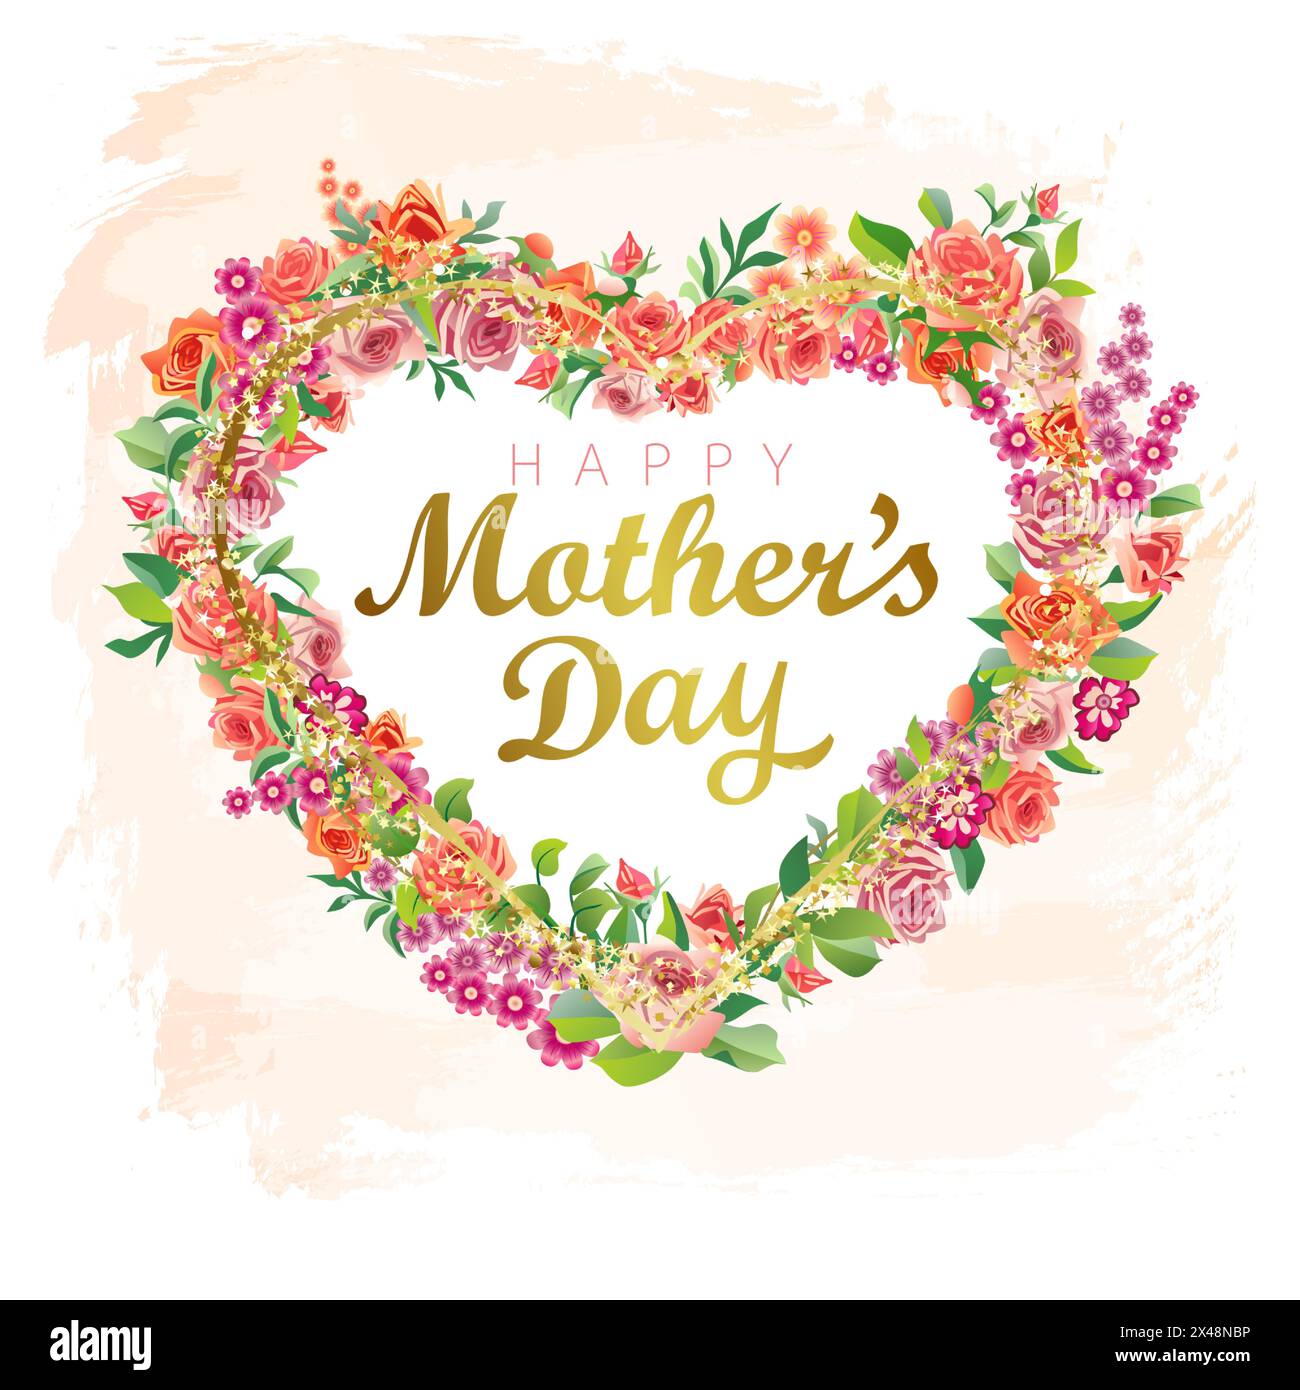 Herzliche Grüße zum Muttertag. Kreativer Rosenzweig, Herzkranzdekoration mit 3D-Blumen und Blättern. Glitzernde goldene Elemente Stock Vektor